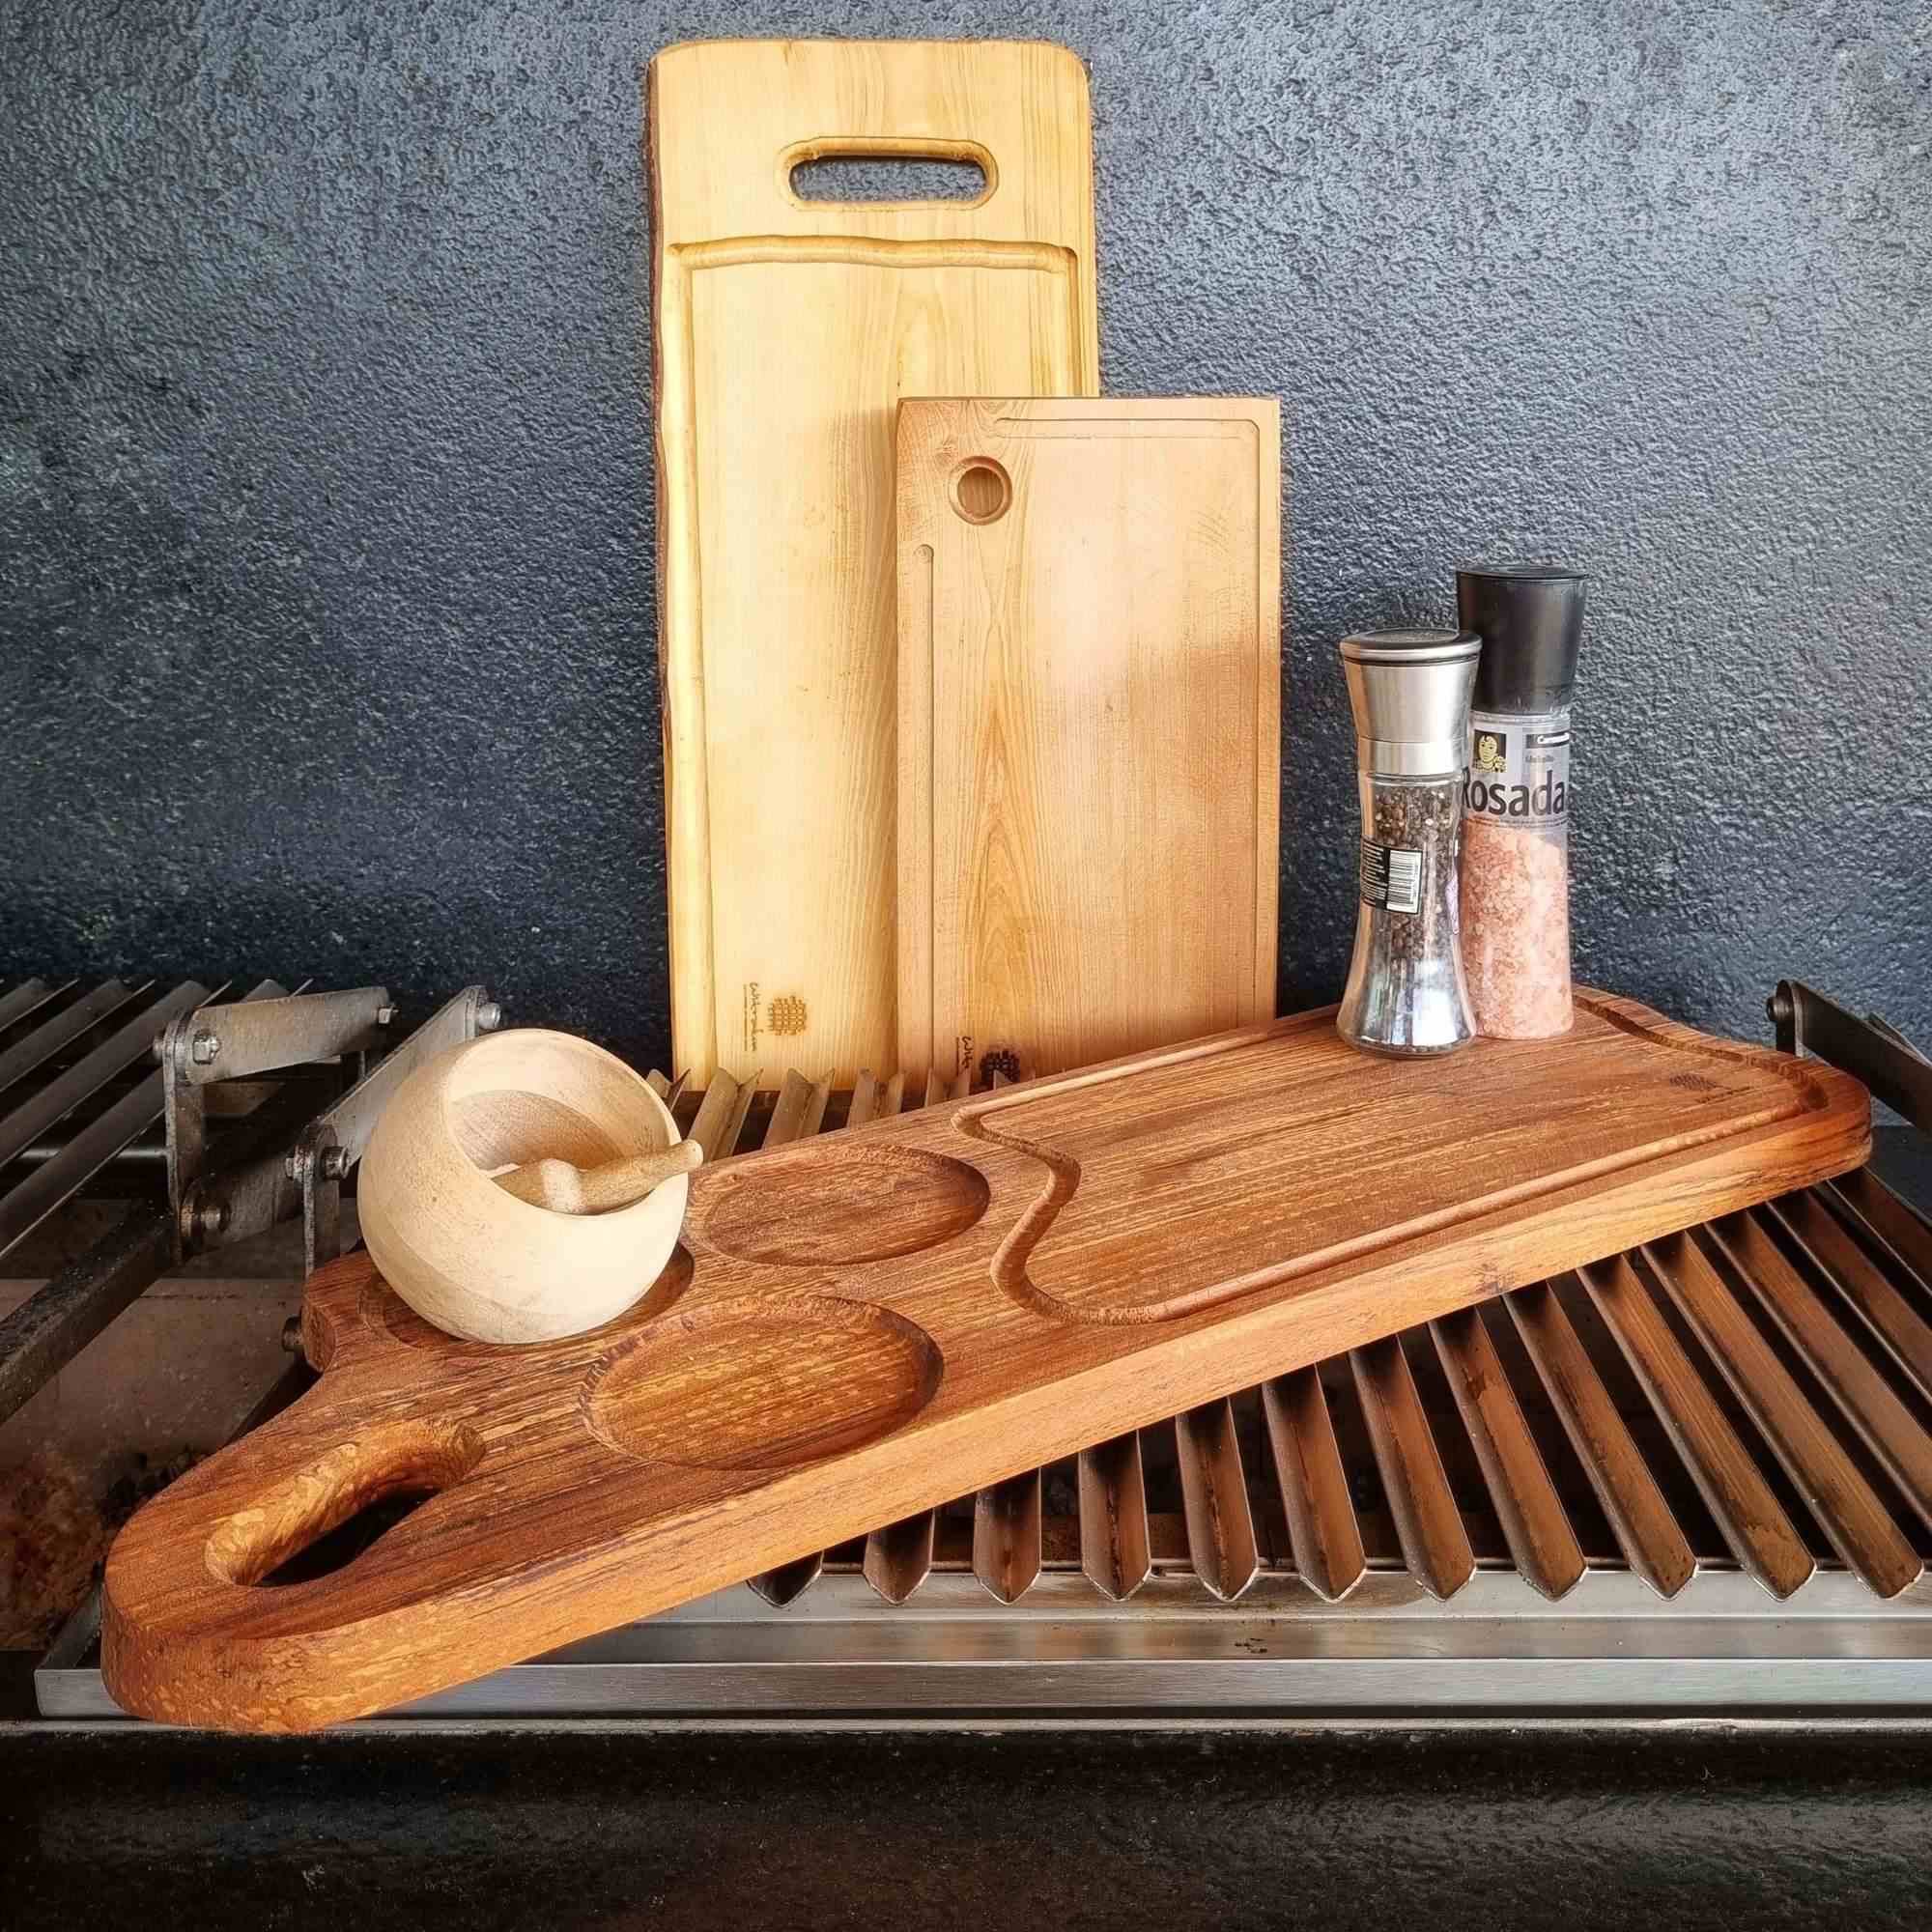 Tabla de cocina de madera de roble.